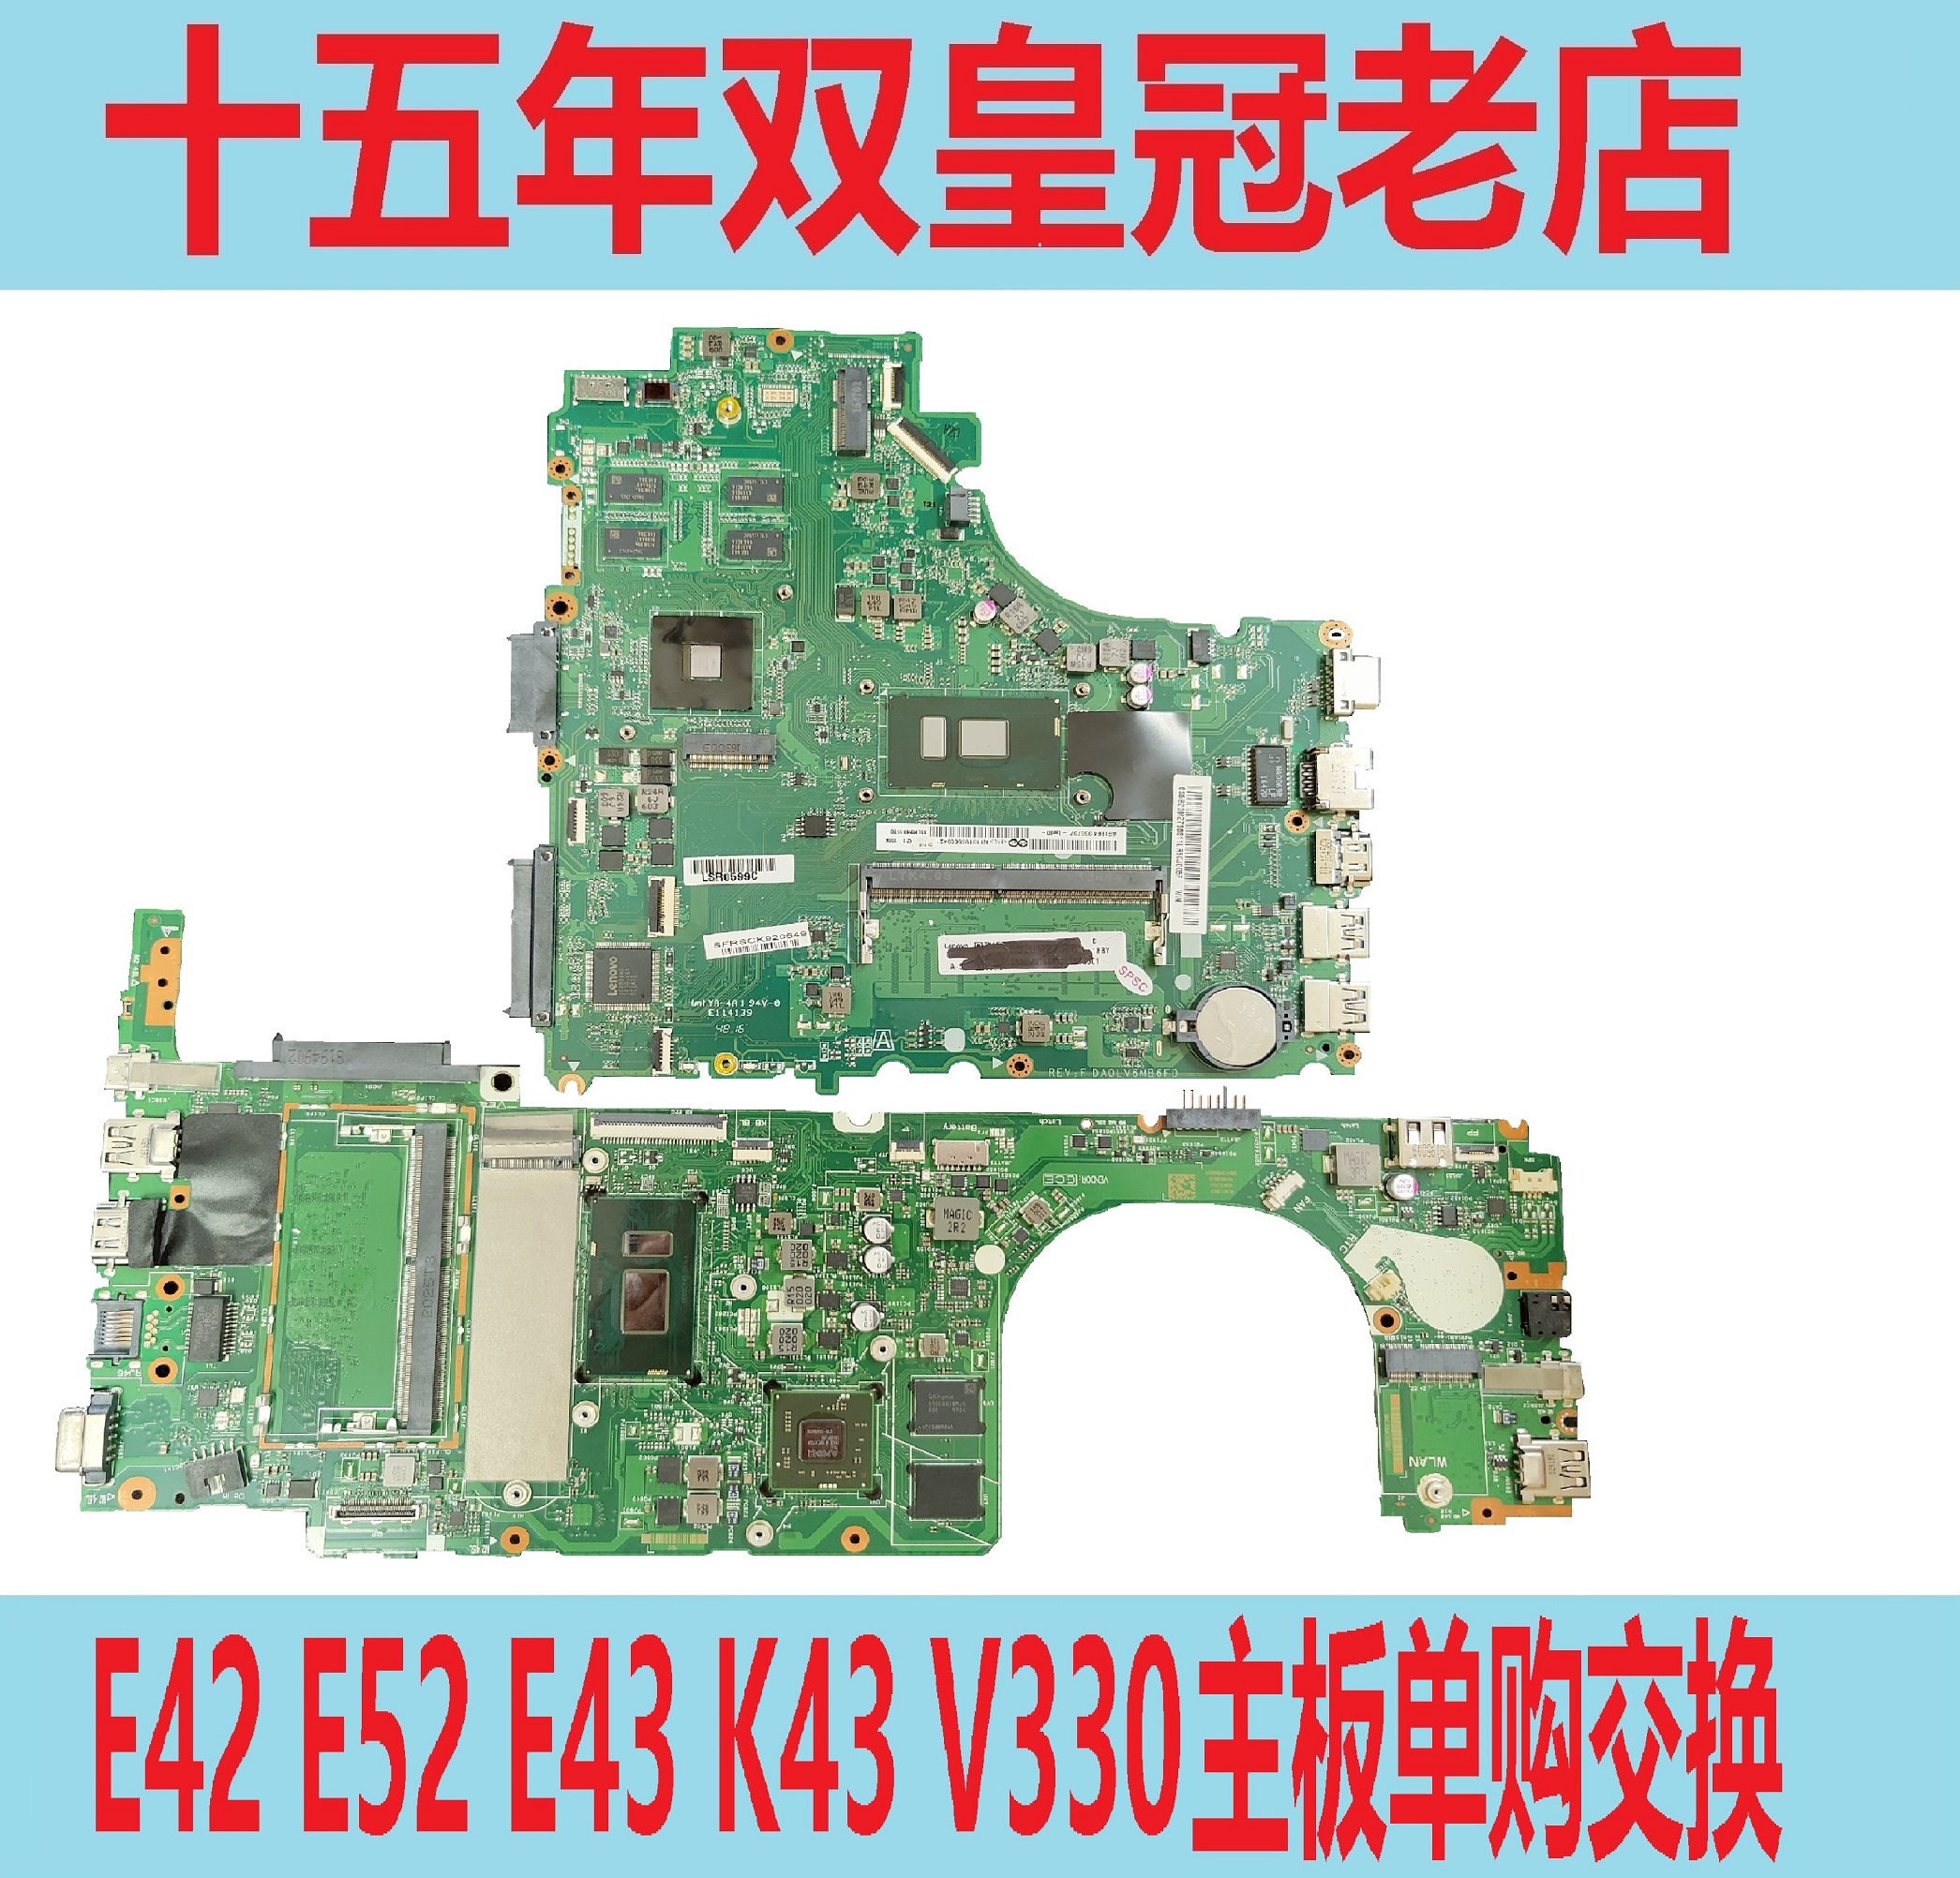 联想K43C-80 E41 E53 昭阳 E42-80 E52 E43-80 V130  V330-14主板